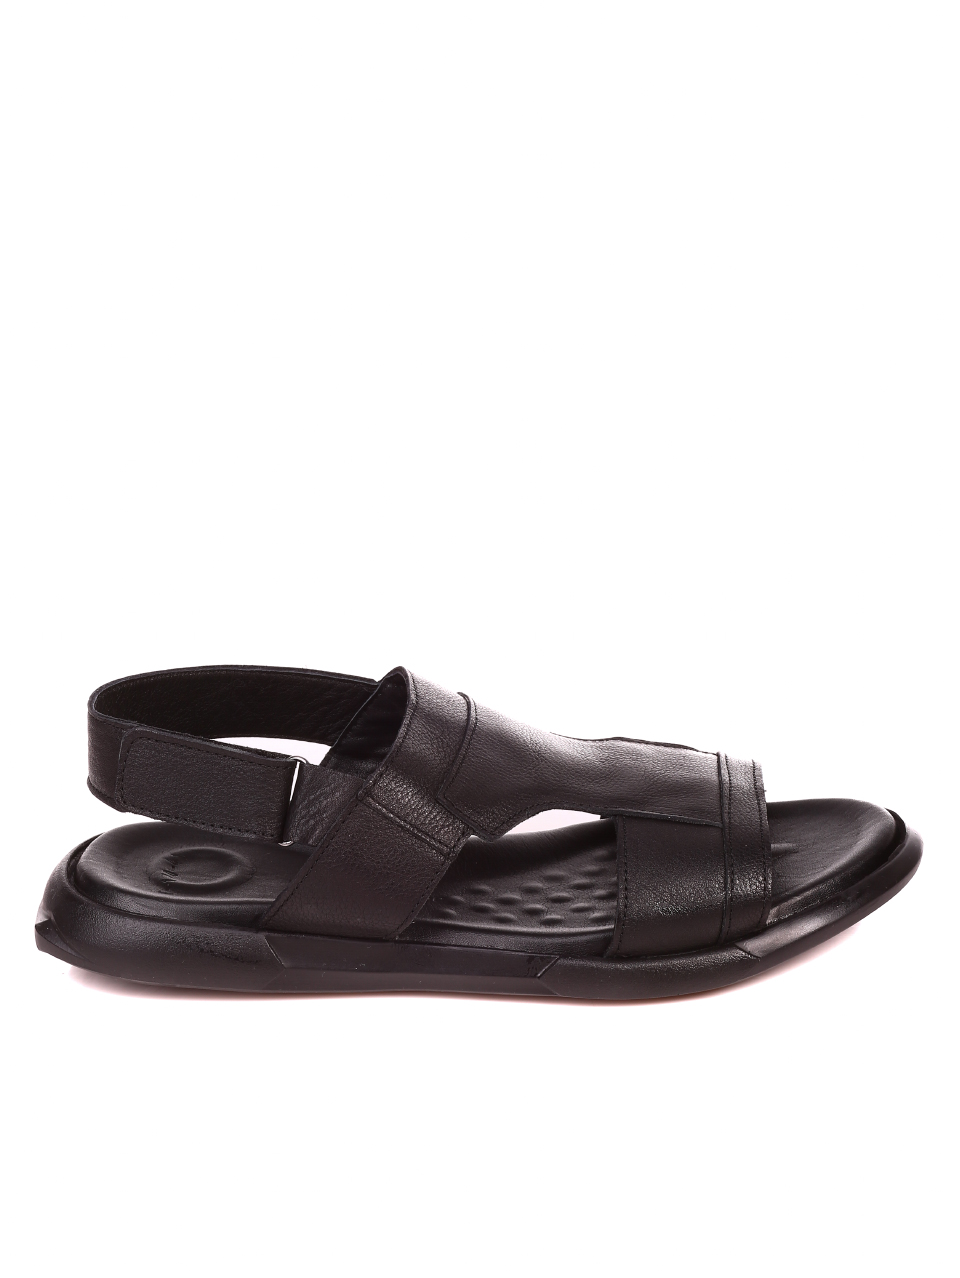 Ежедневни мъжки сандали от естествена кожа 8AT-21330 black